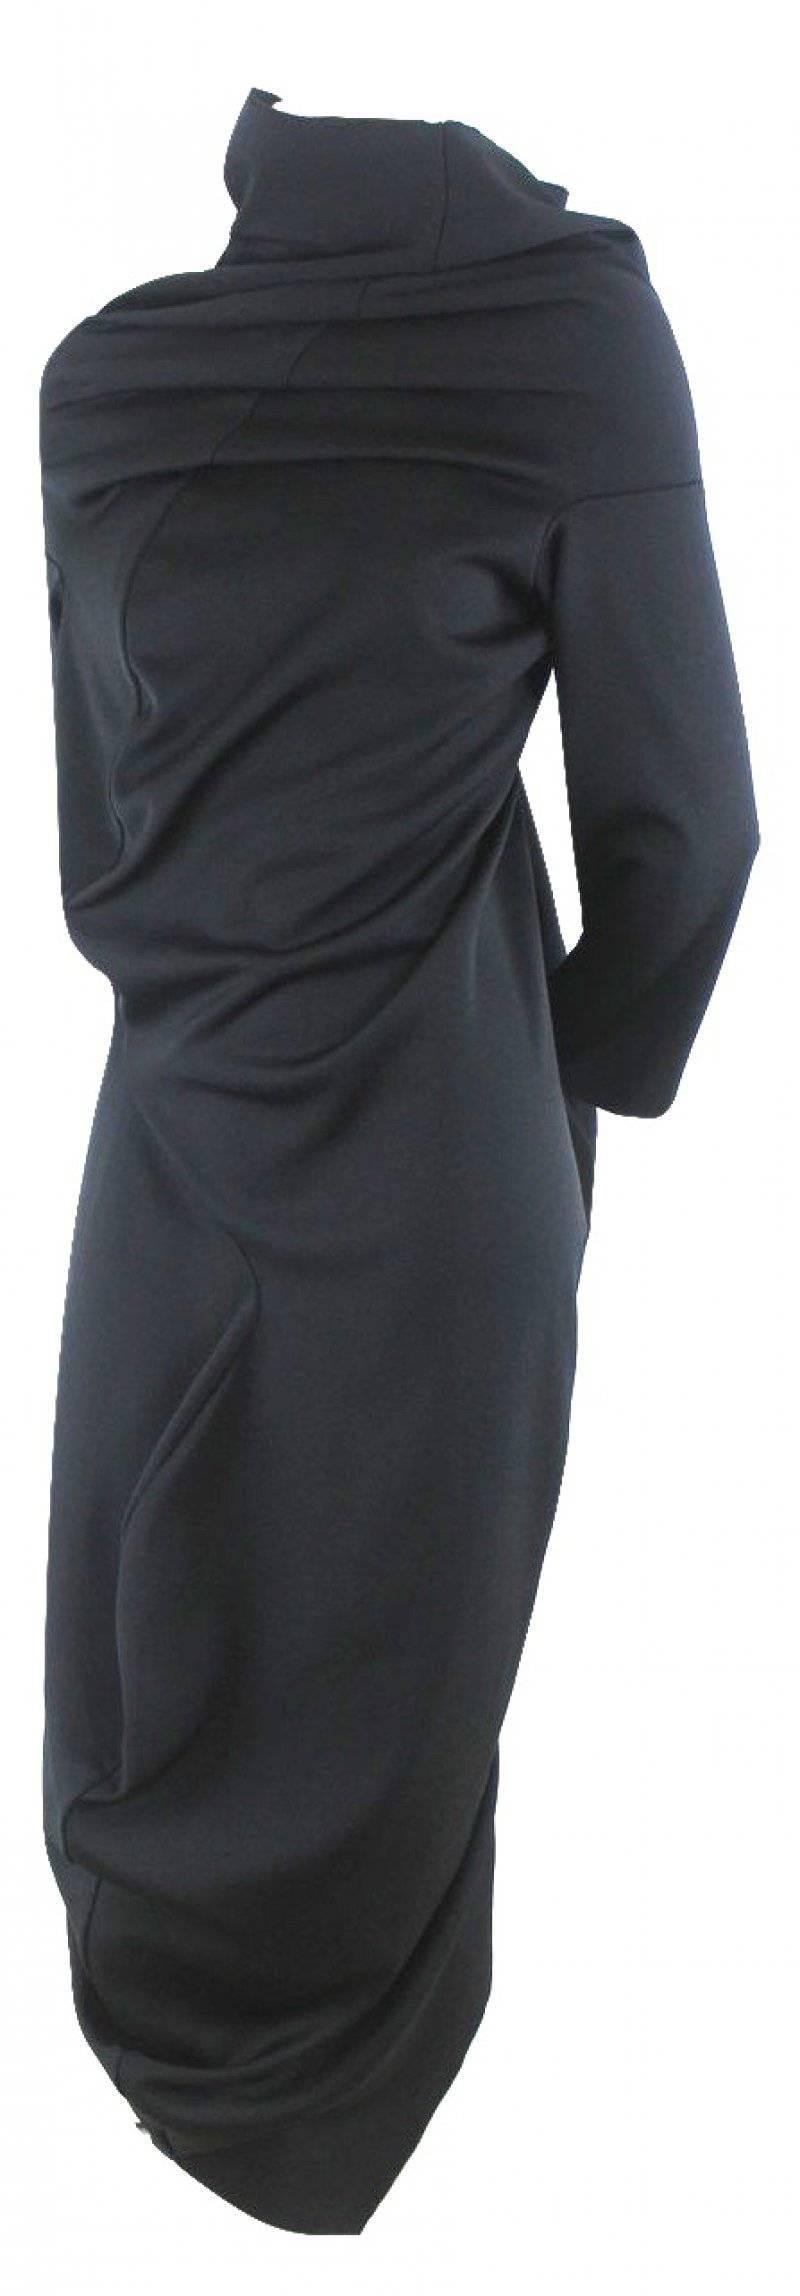 Comme des Garcons 2011 Collection S-Curve Dress
Labelled size L
Excellent Condition 